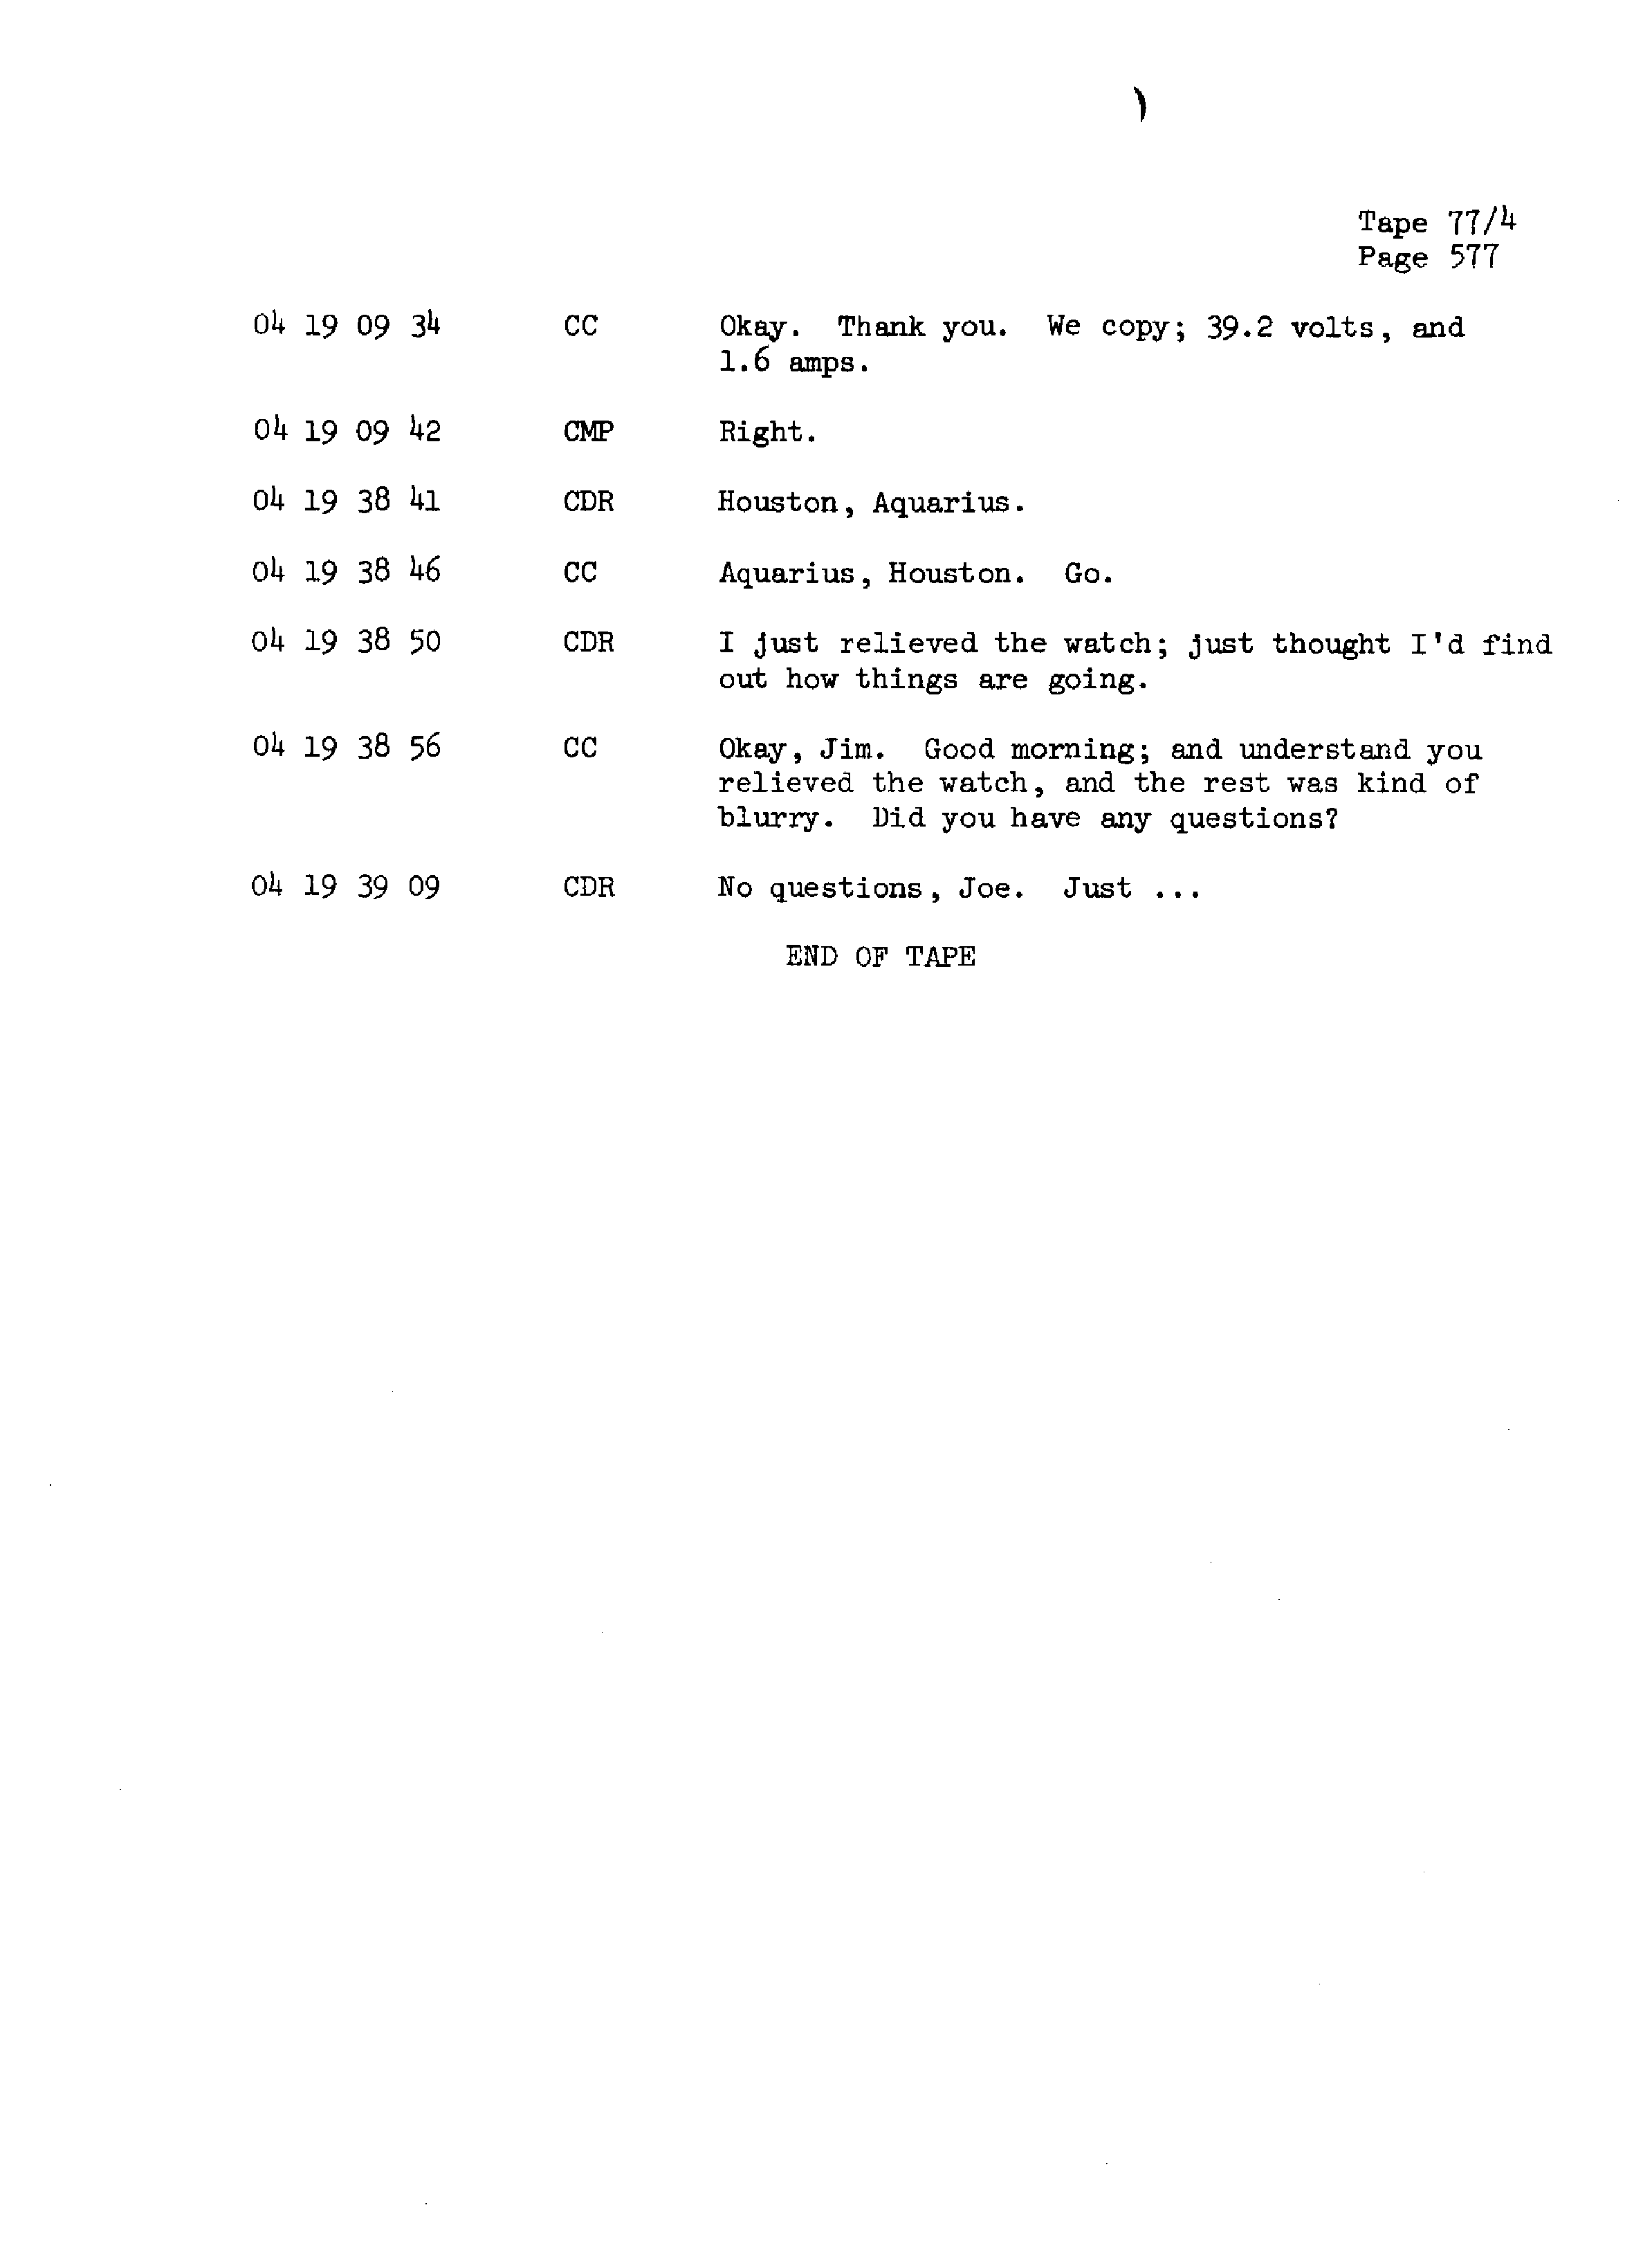 Page 584 of Apollo 13’s original transcript